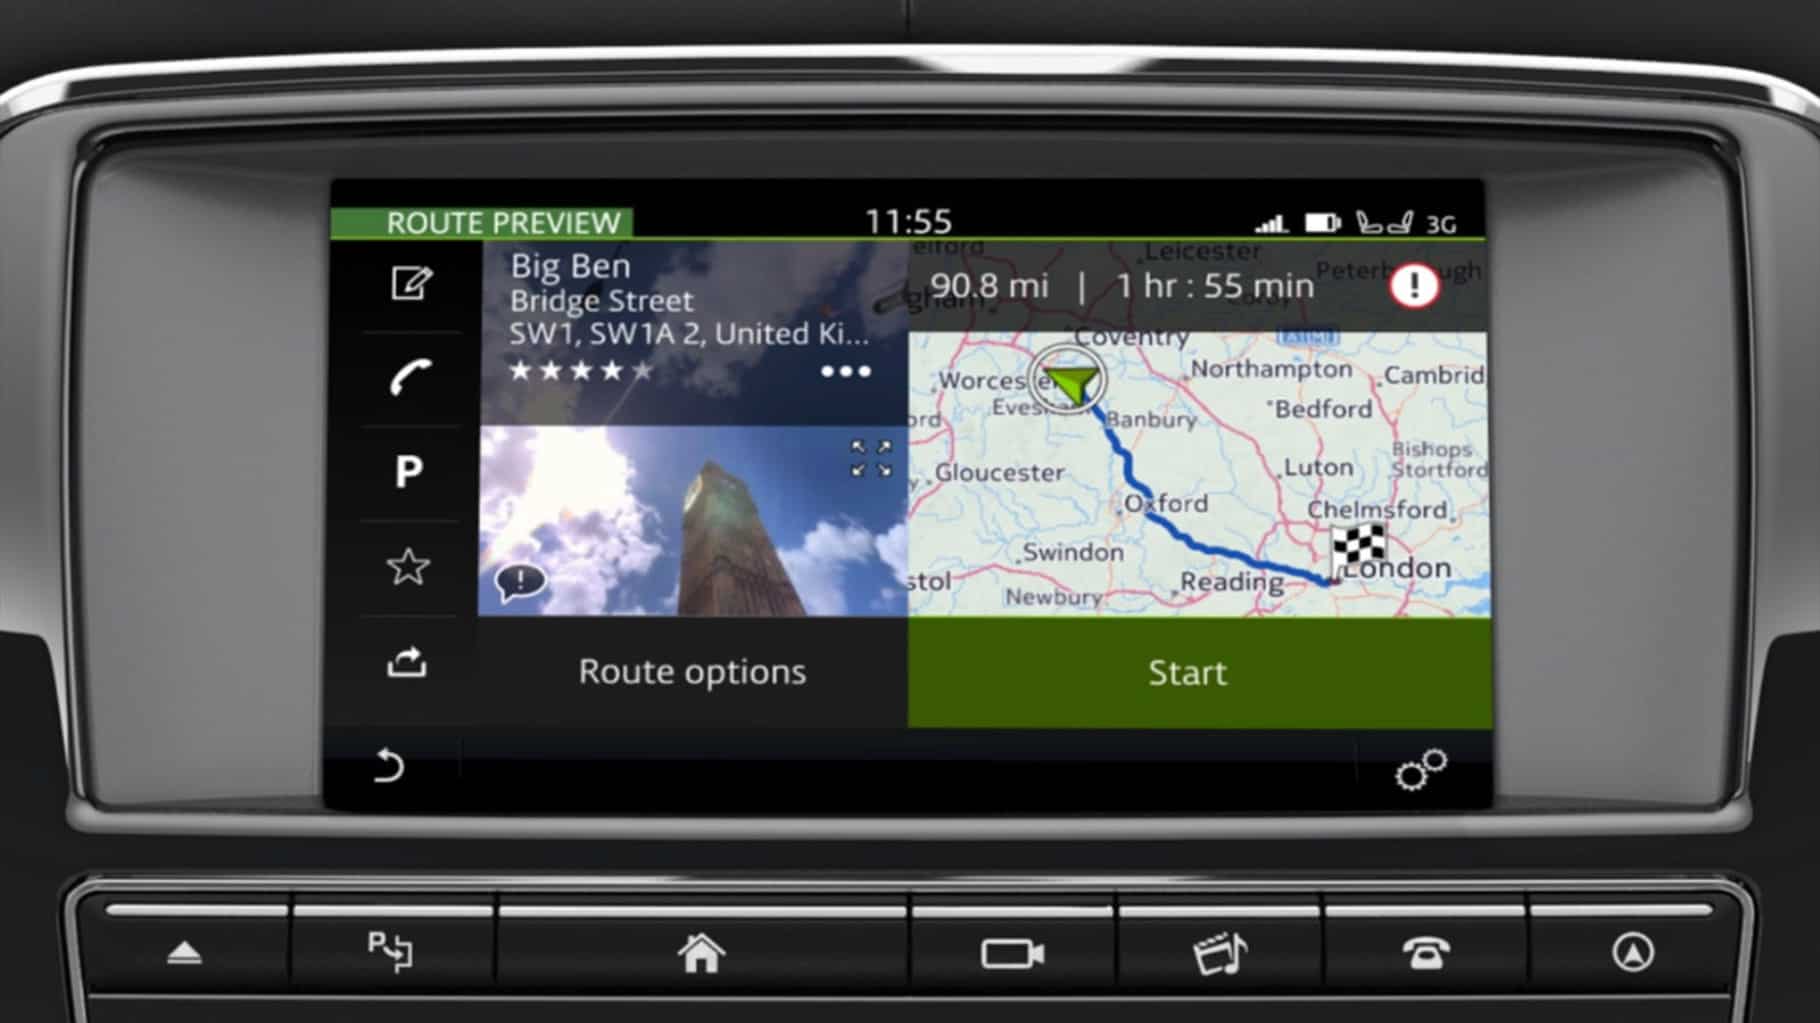 Jaguar XJ's InControl Touch Pro: Navigation - Entering a Destination information video.